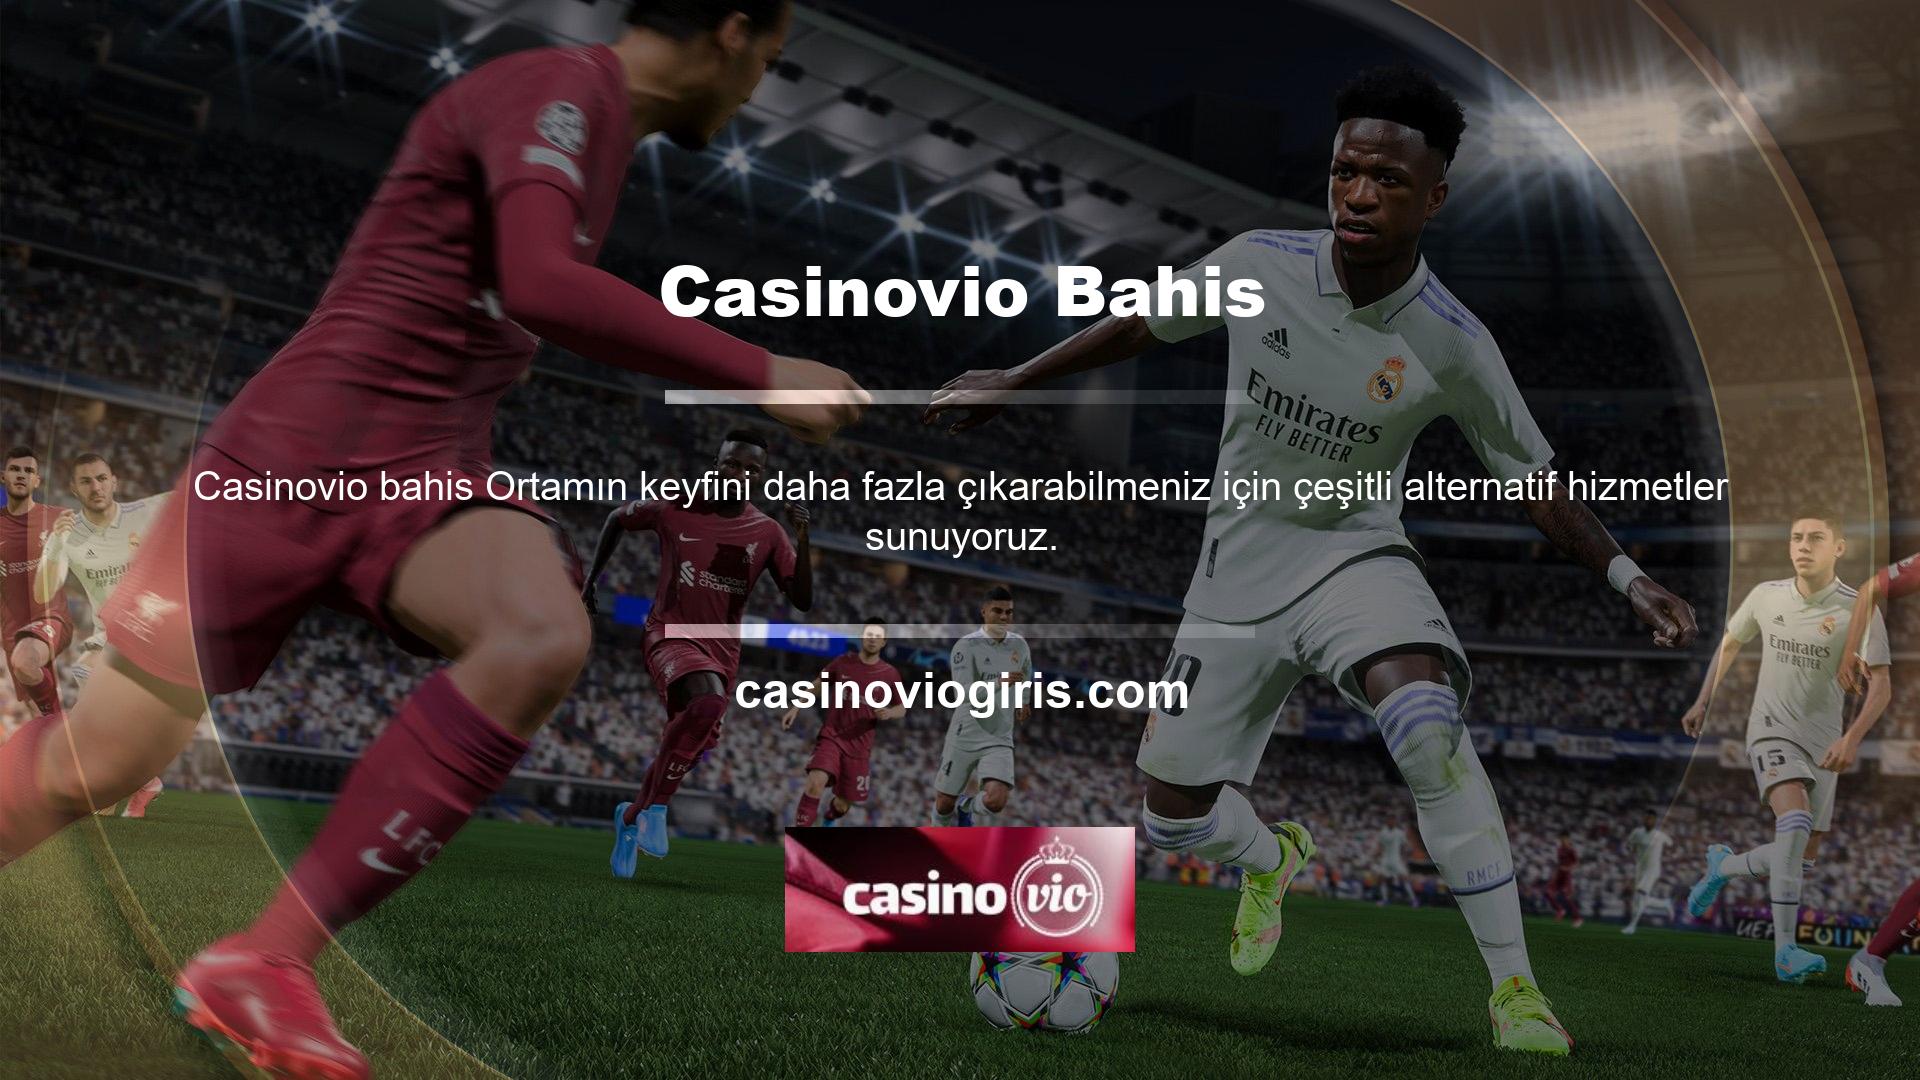 Paparazzi bonus sitelerinden biri olan Casinovio bahis sitesi de harika yatırım sonrası bonuslar sunuyor